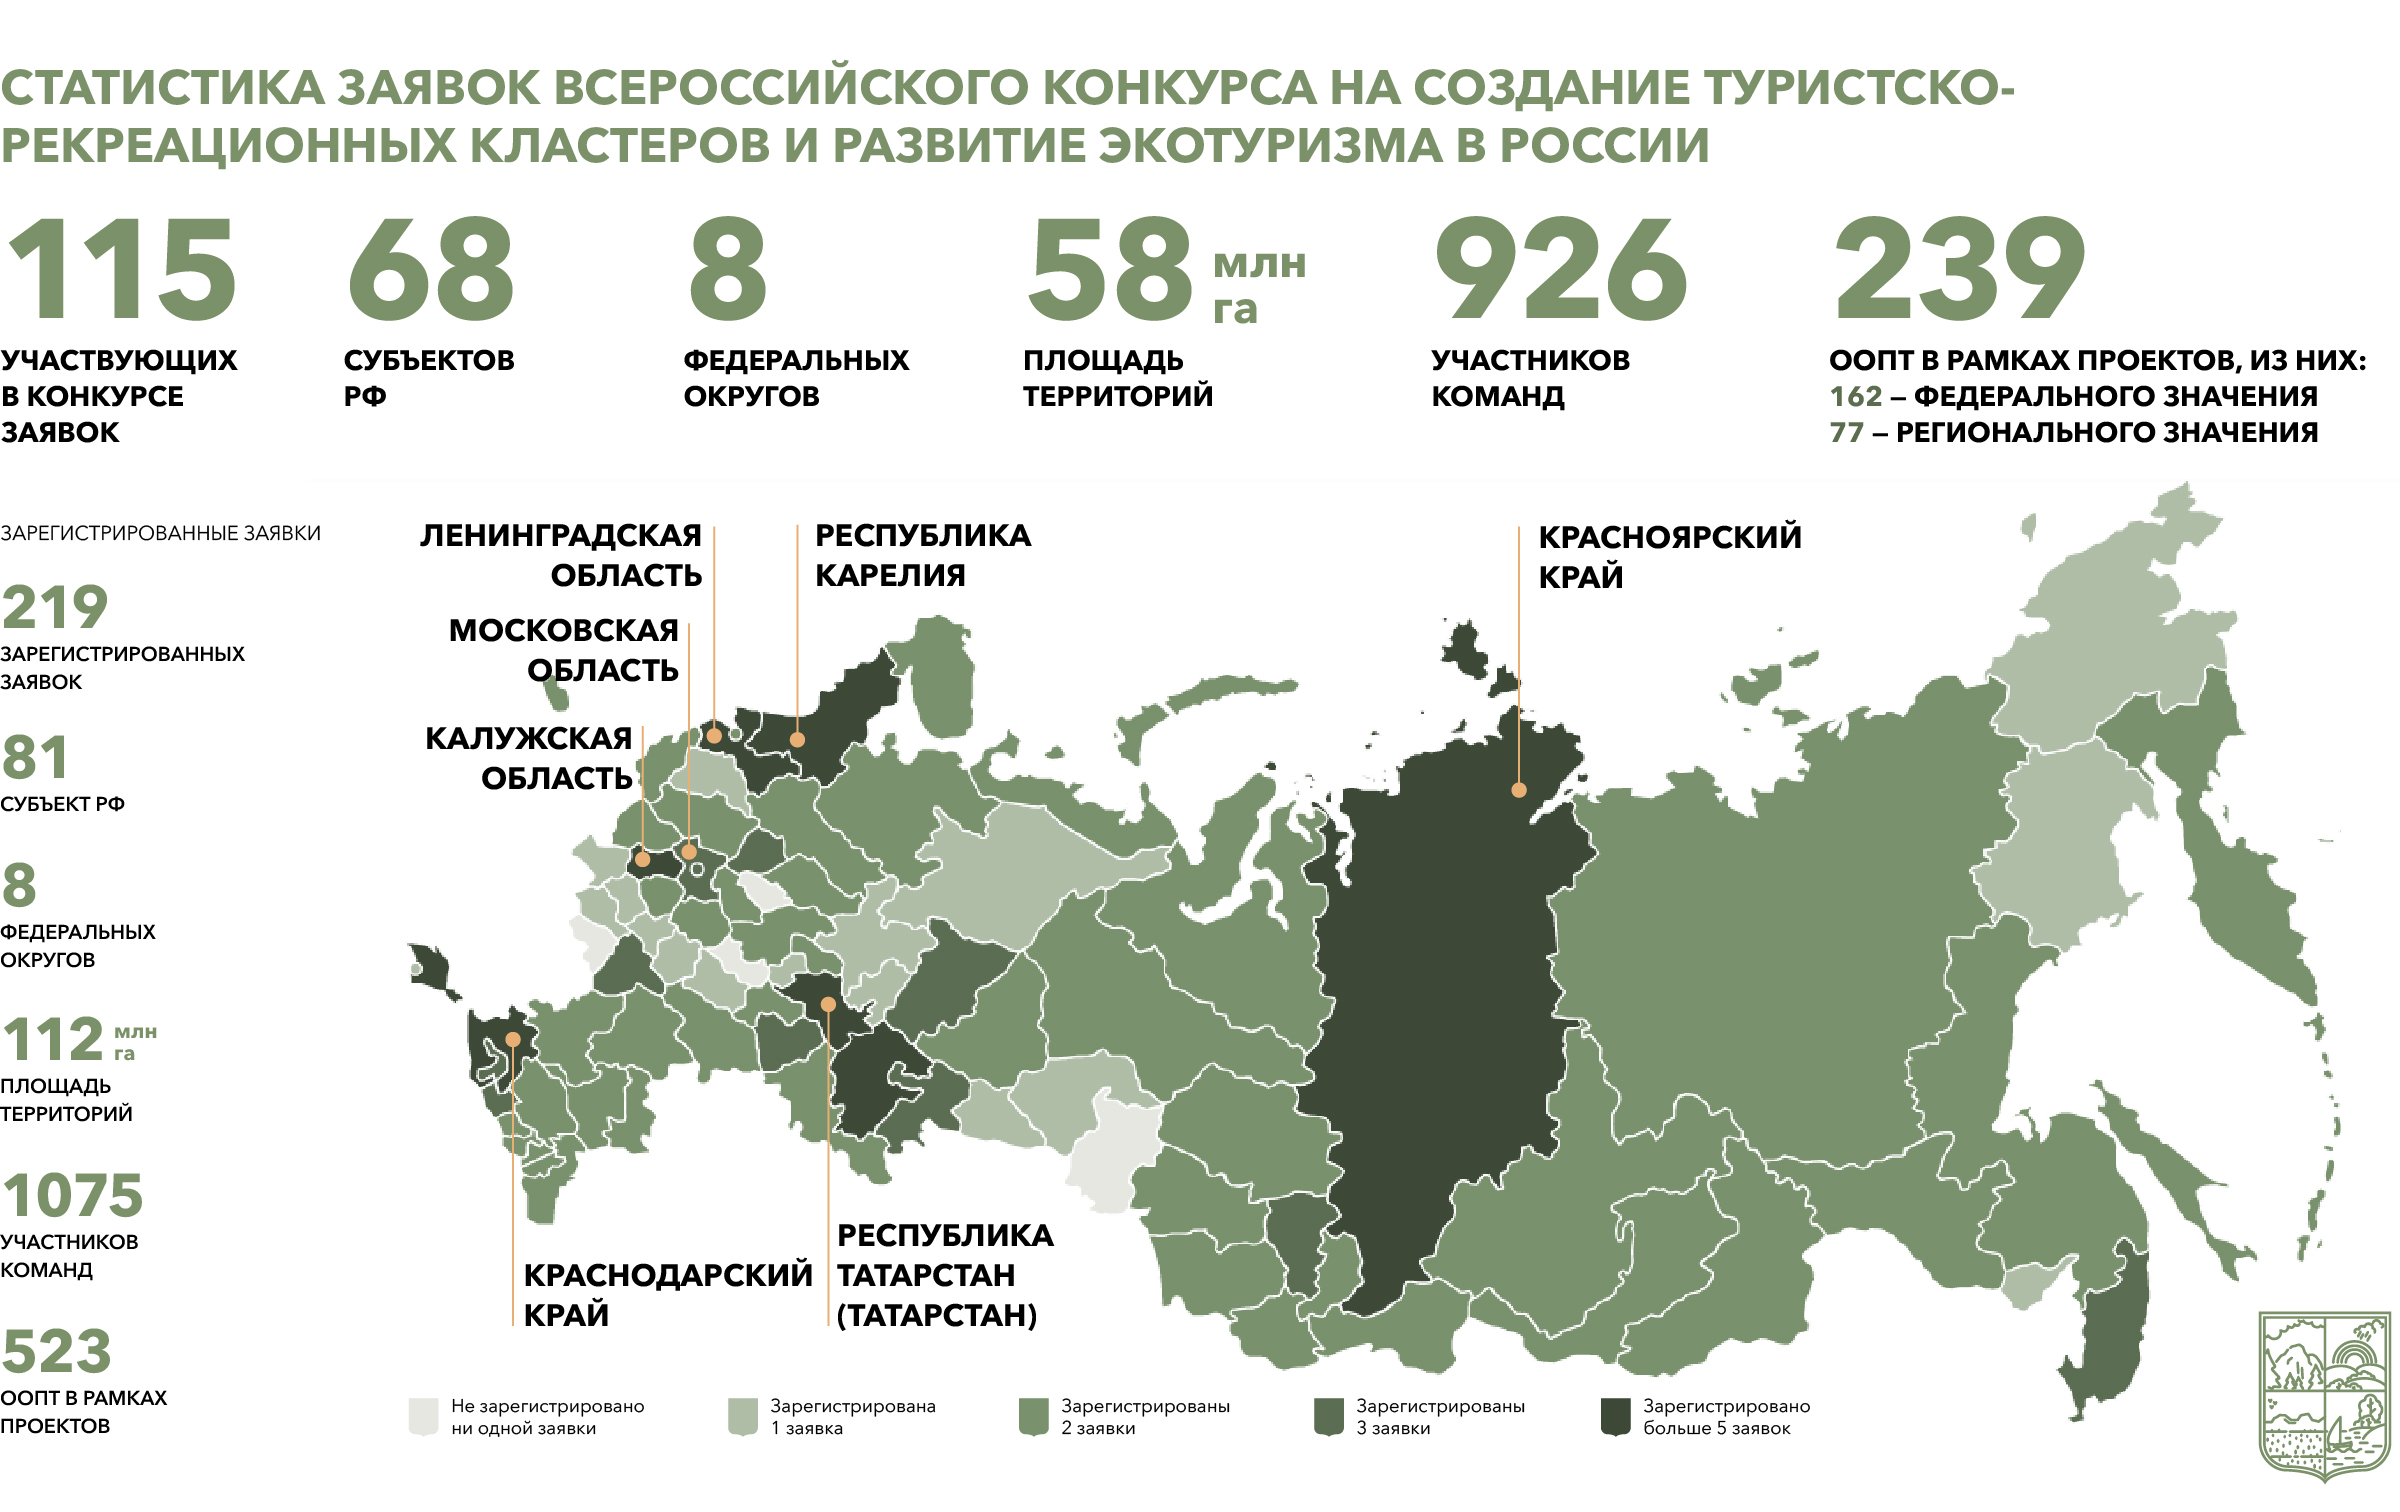 Туристско-рекреационные кластеры России 2020